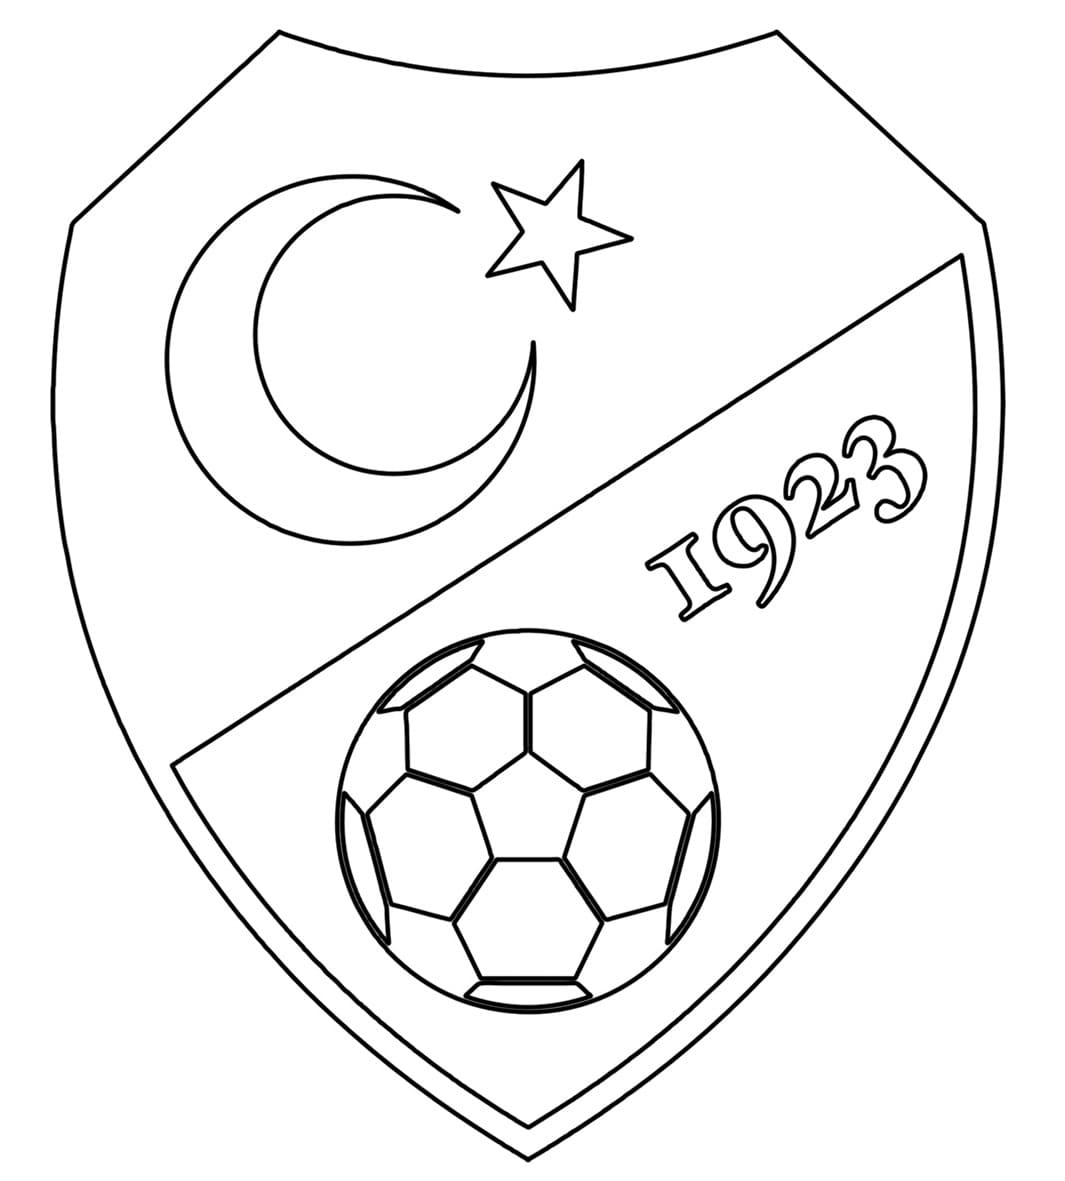 Équipe de Turquie de Football coloring page